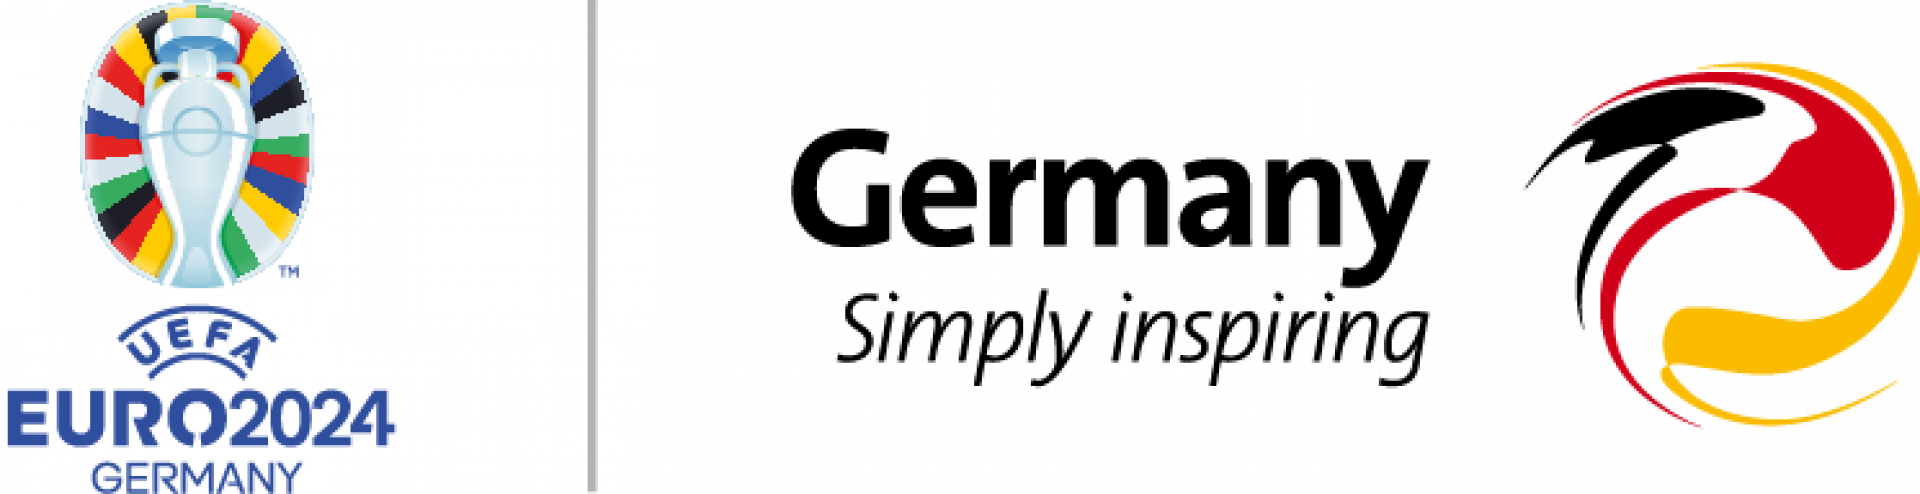 EN EM logo digital PNG